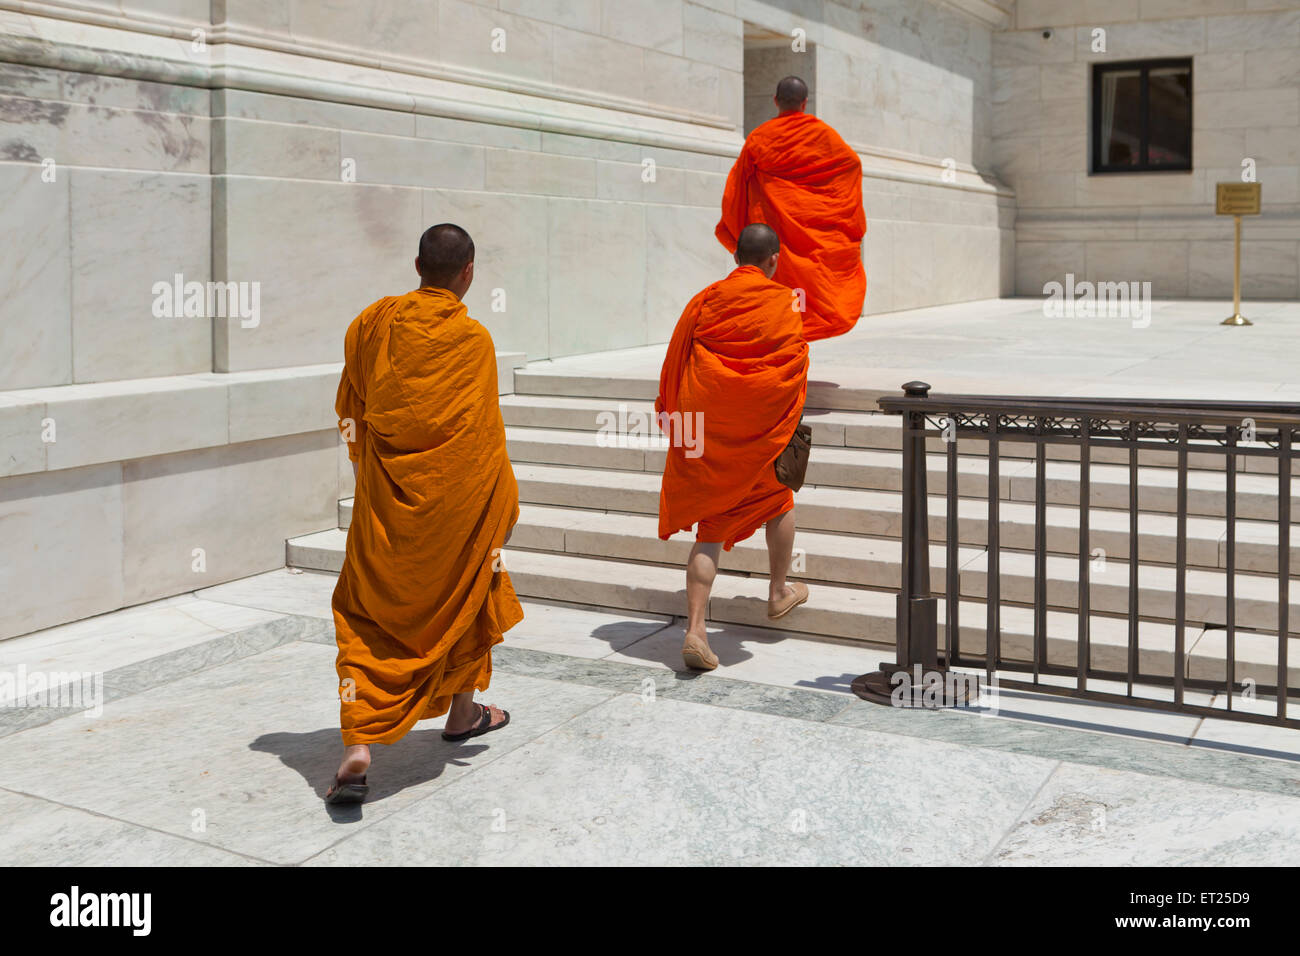 Los monjes budistas caminando hacia el edificio de la Corte Suprema de Estados Unidos - Washington, DC, EE.UU. Foto de stock